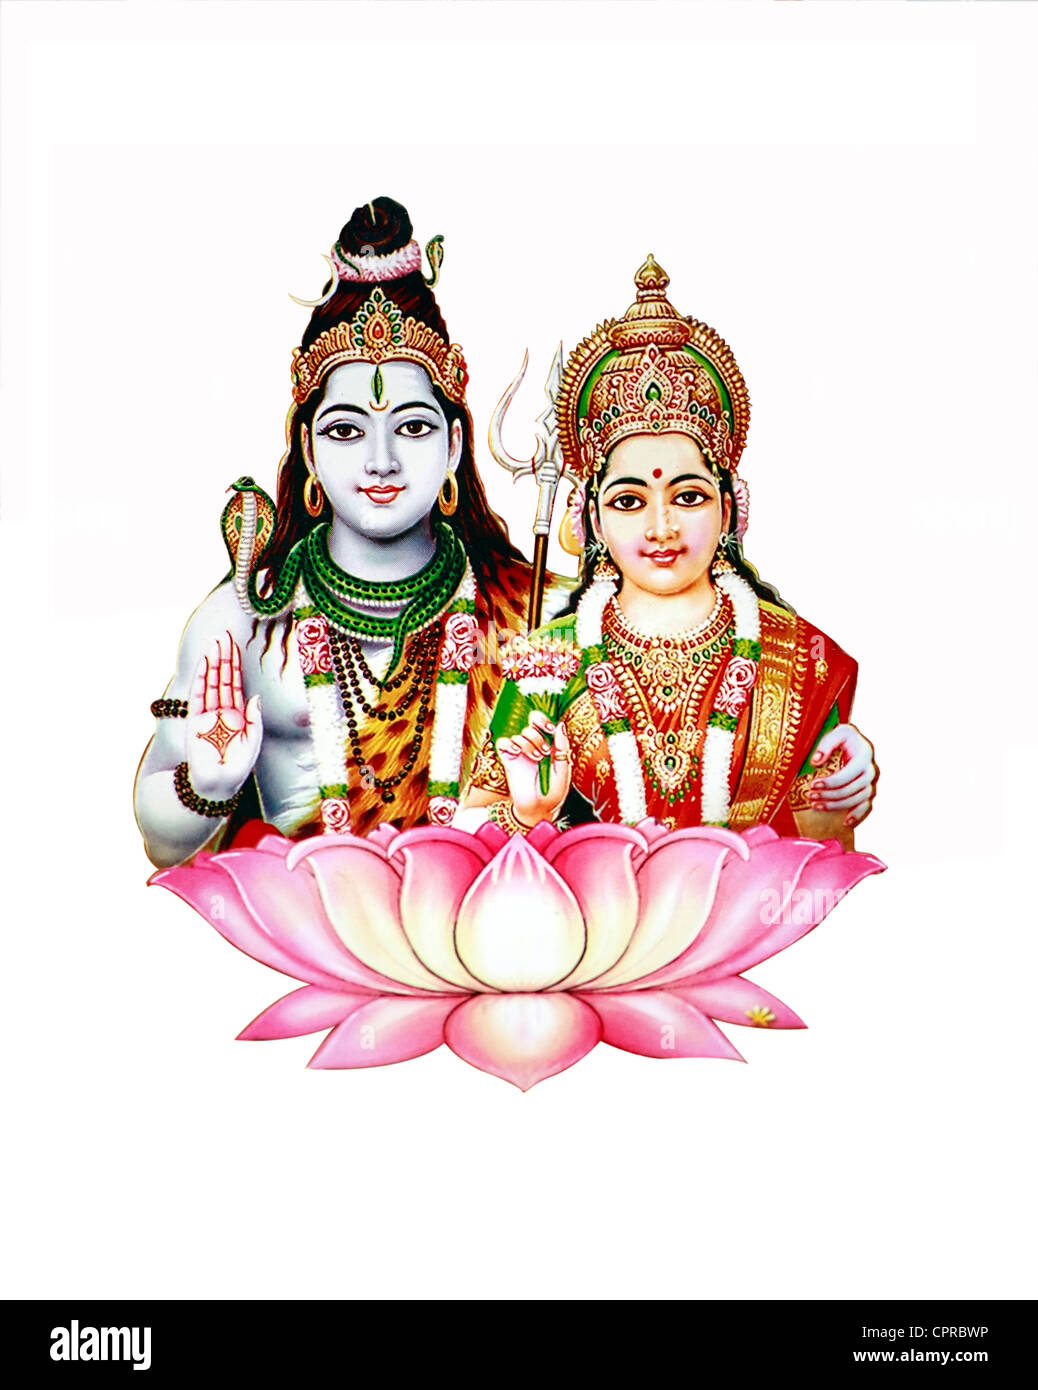 Siva and Parvati - gods in Hindu mythology worship Stock Photo - Alamy